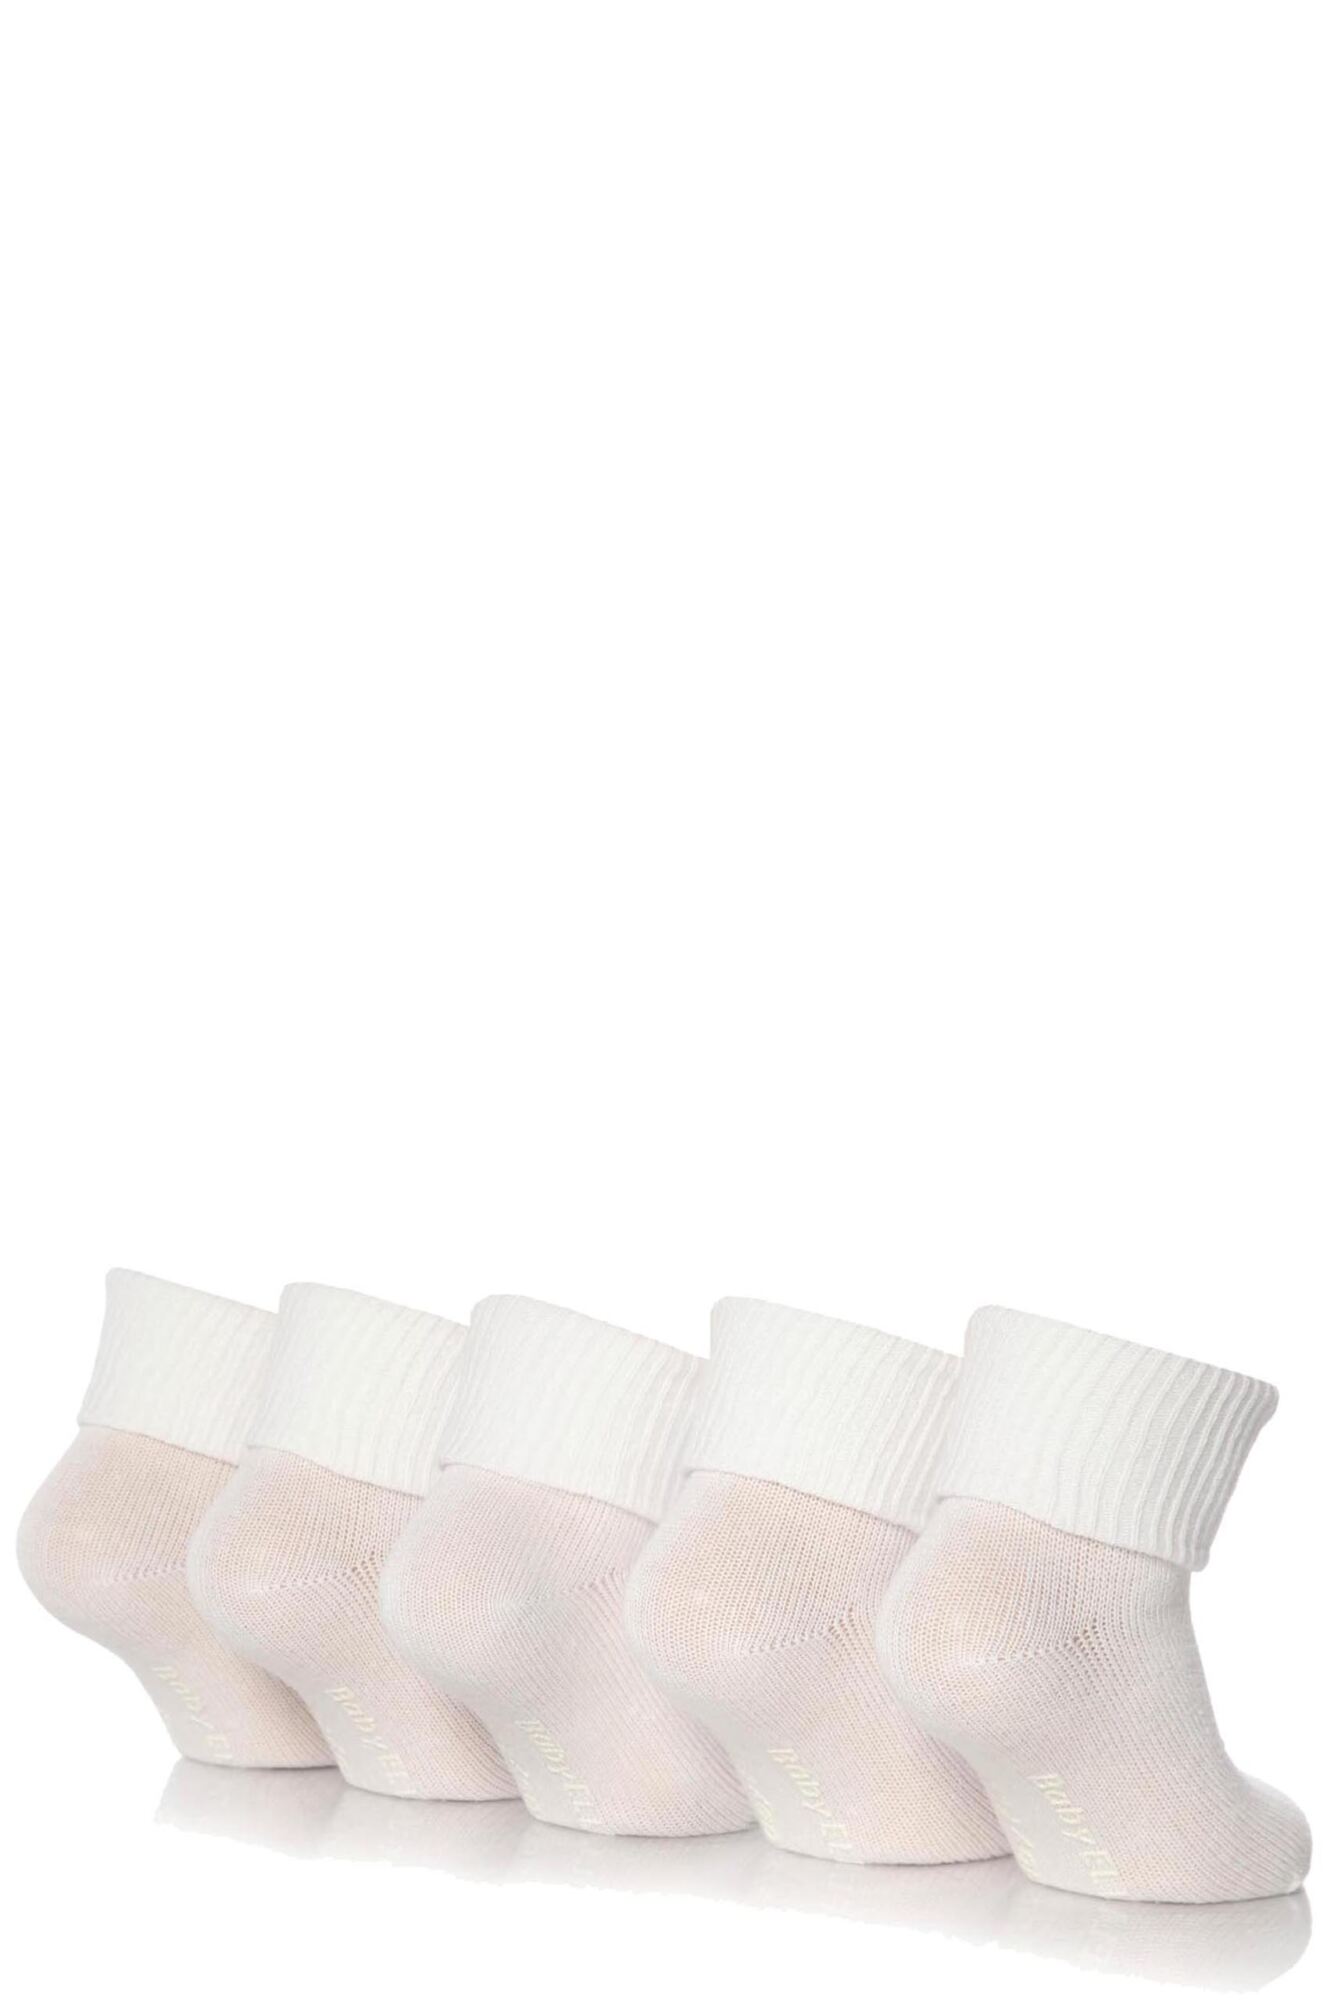 5 Pair Baby White Plain Ankle Socks Girls - Elle